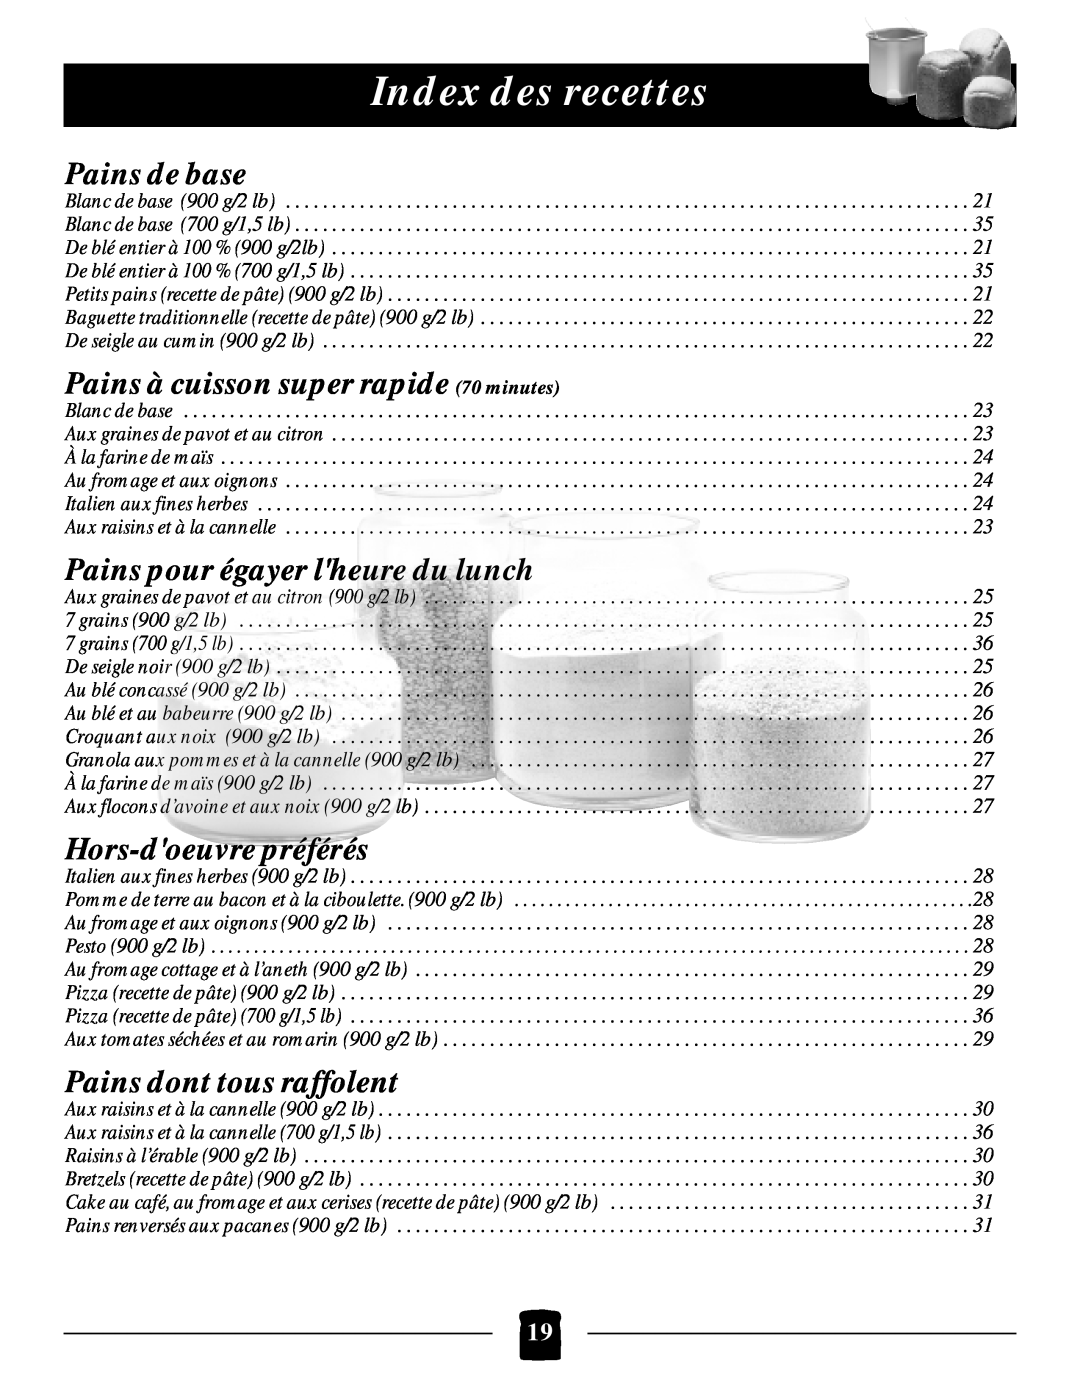 Black & Decker B1650 Index des recettes, Pains de base, Pains à cuisson super rapide 70 minutes, Hors-doeuvrepréférés 